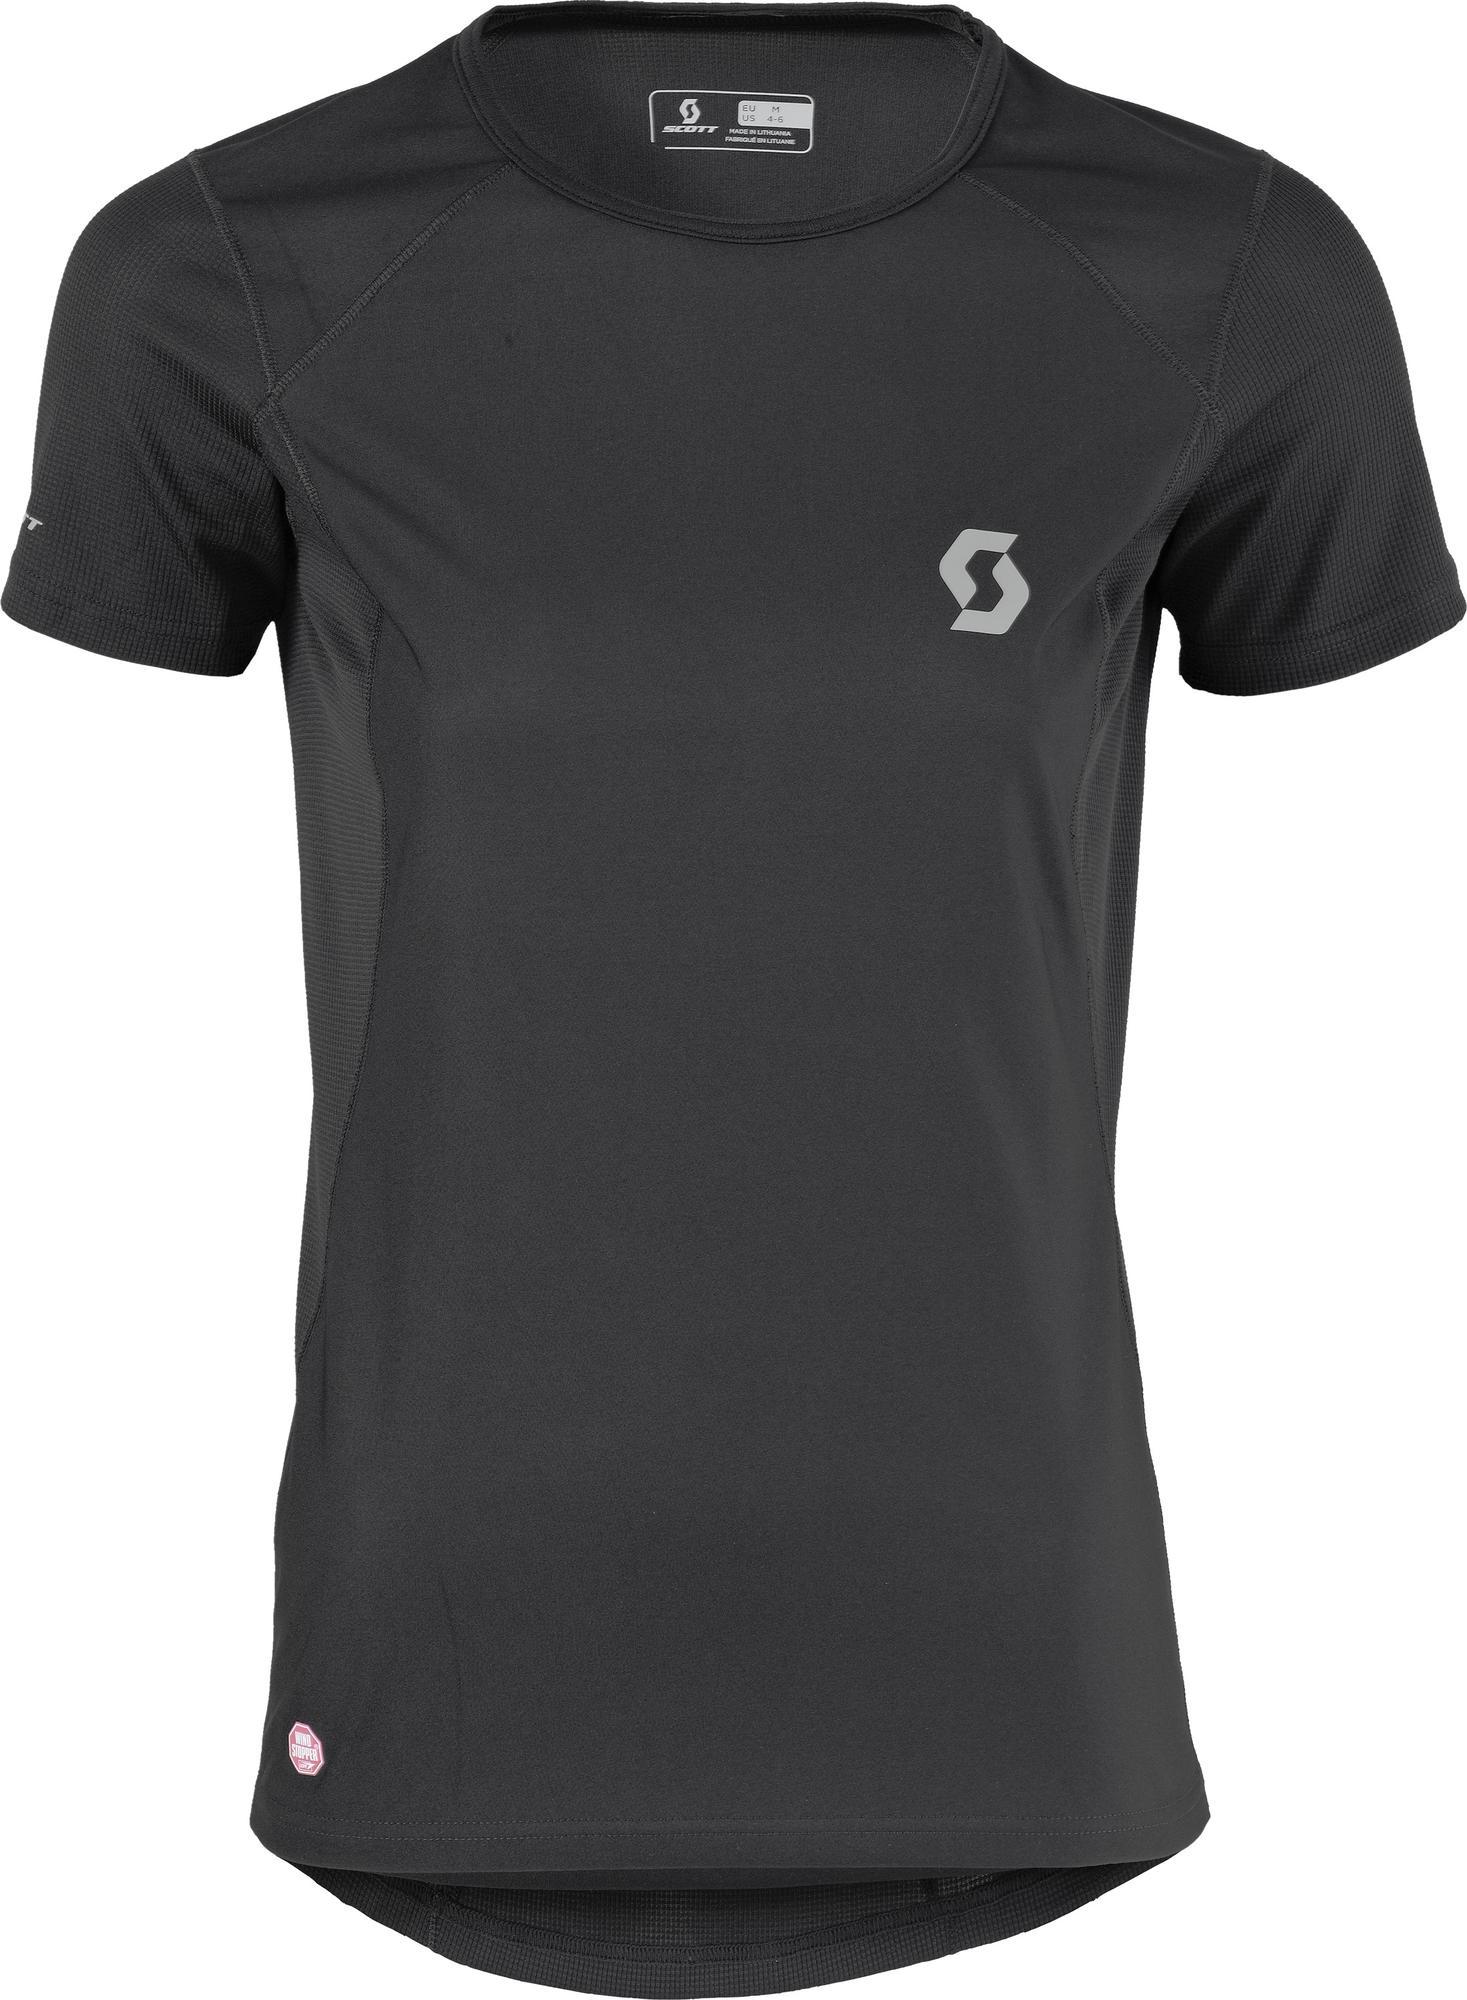 Scott Shirt W's Underwear WS s/sl black (0001) XL